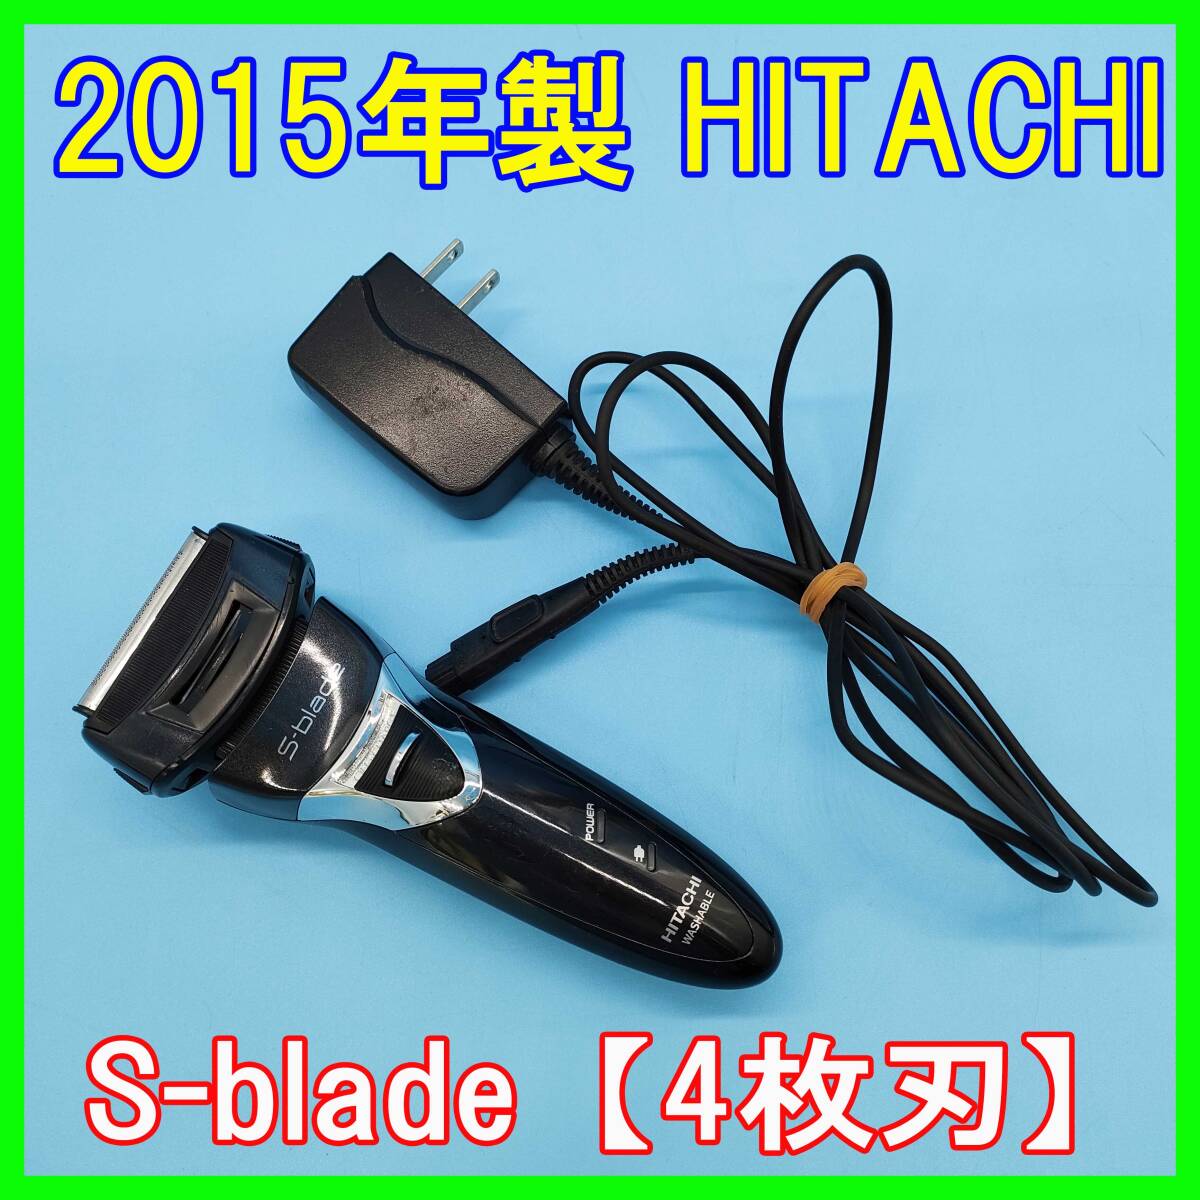  2015年製/HITACHI/S-blade/RM-523/メンズシェーバー/電気シェーバー/4枚刃/髭剃り/お風呂そり対応/防水・水洗い対応★0221-14 